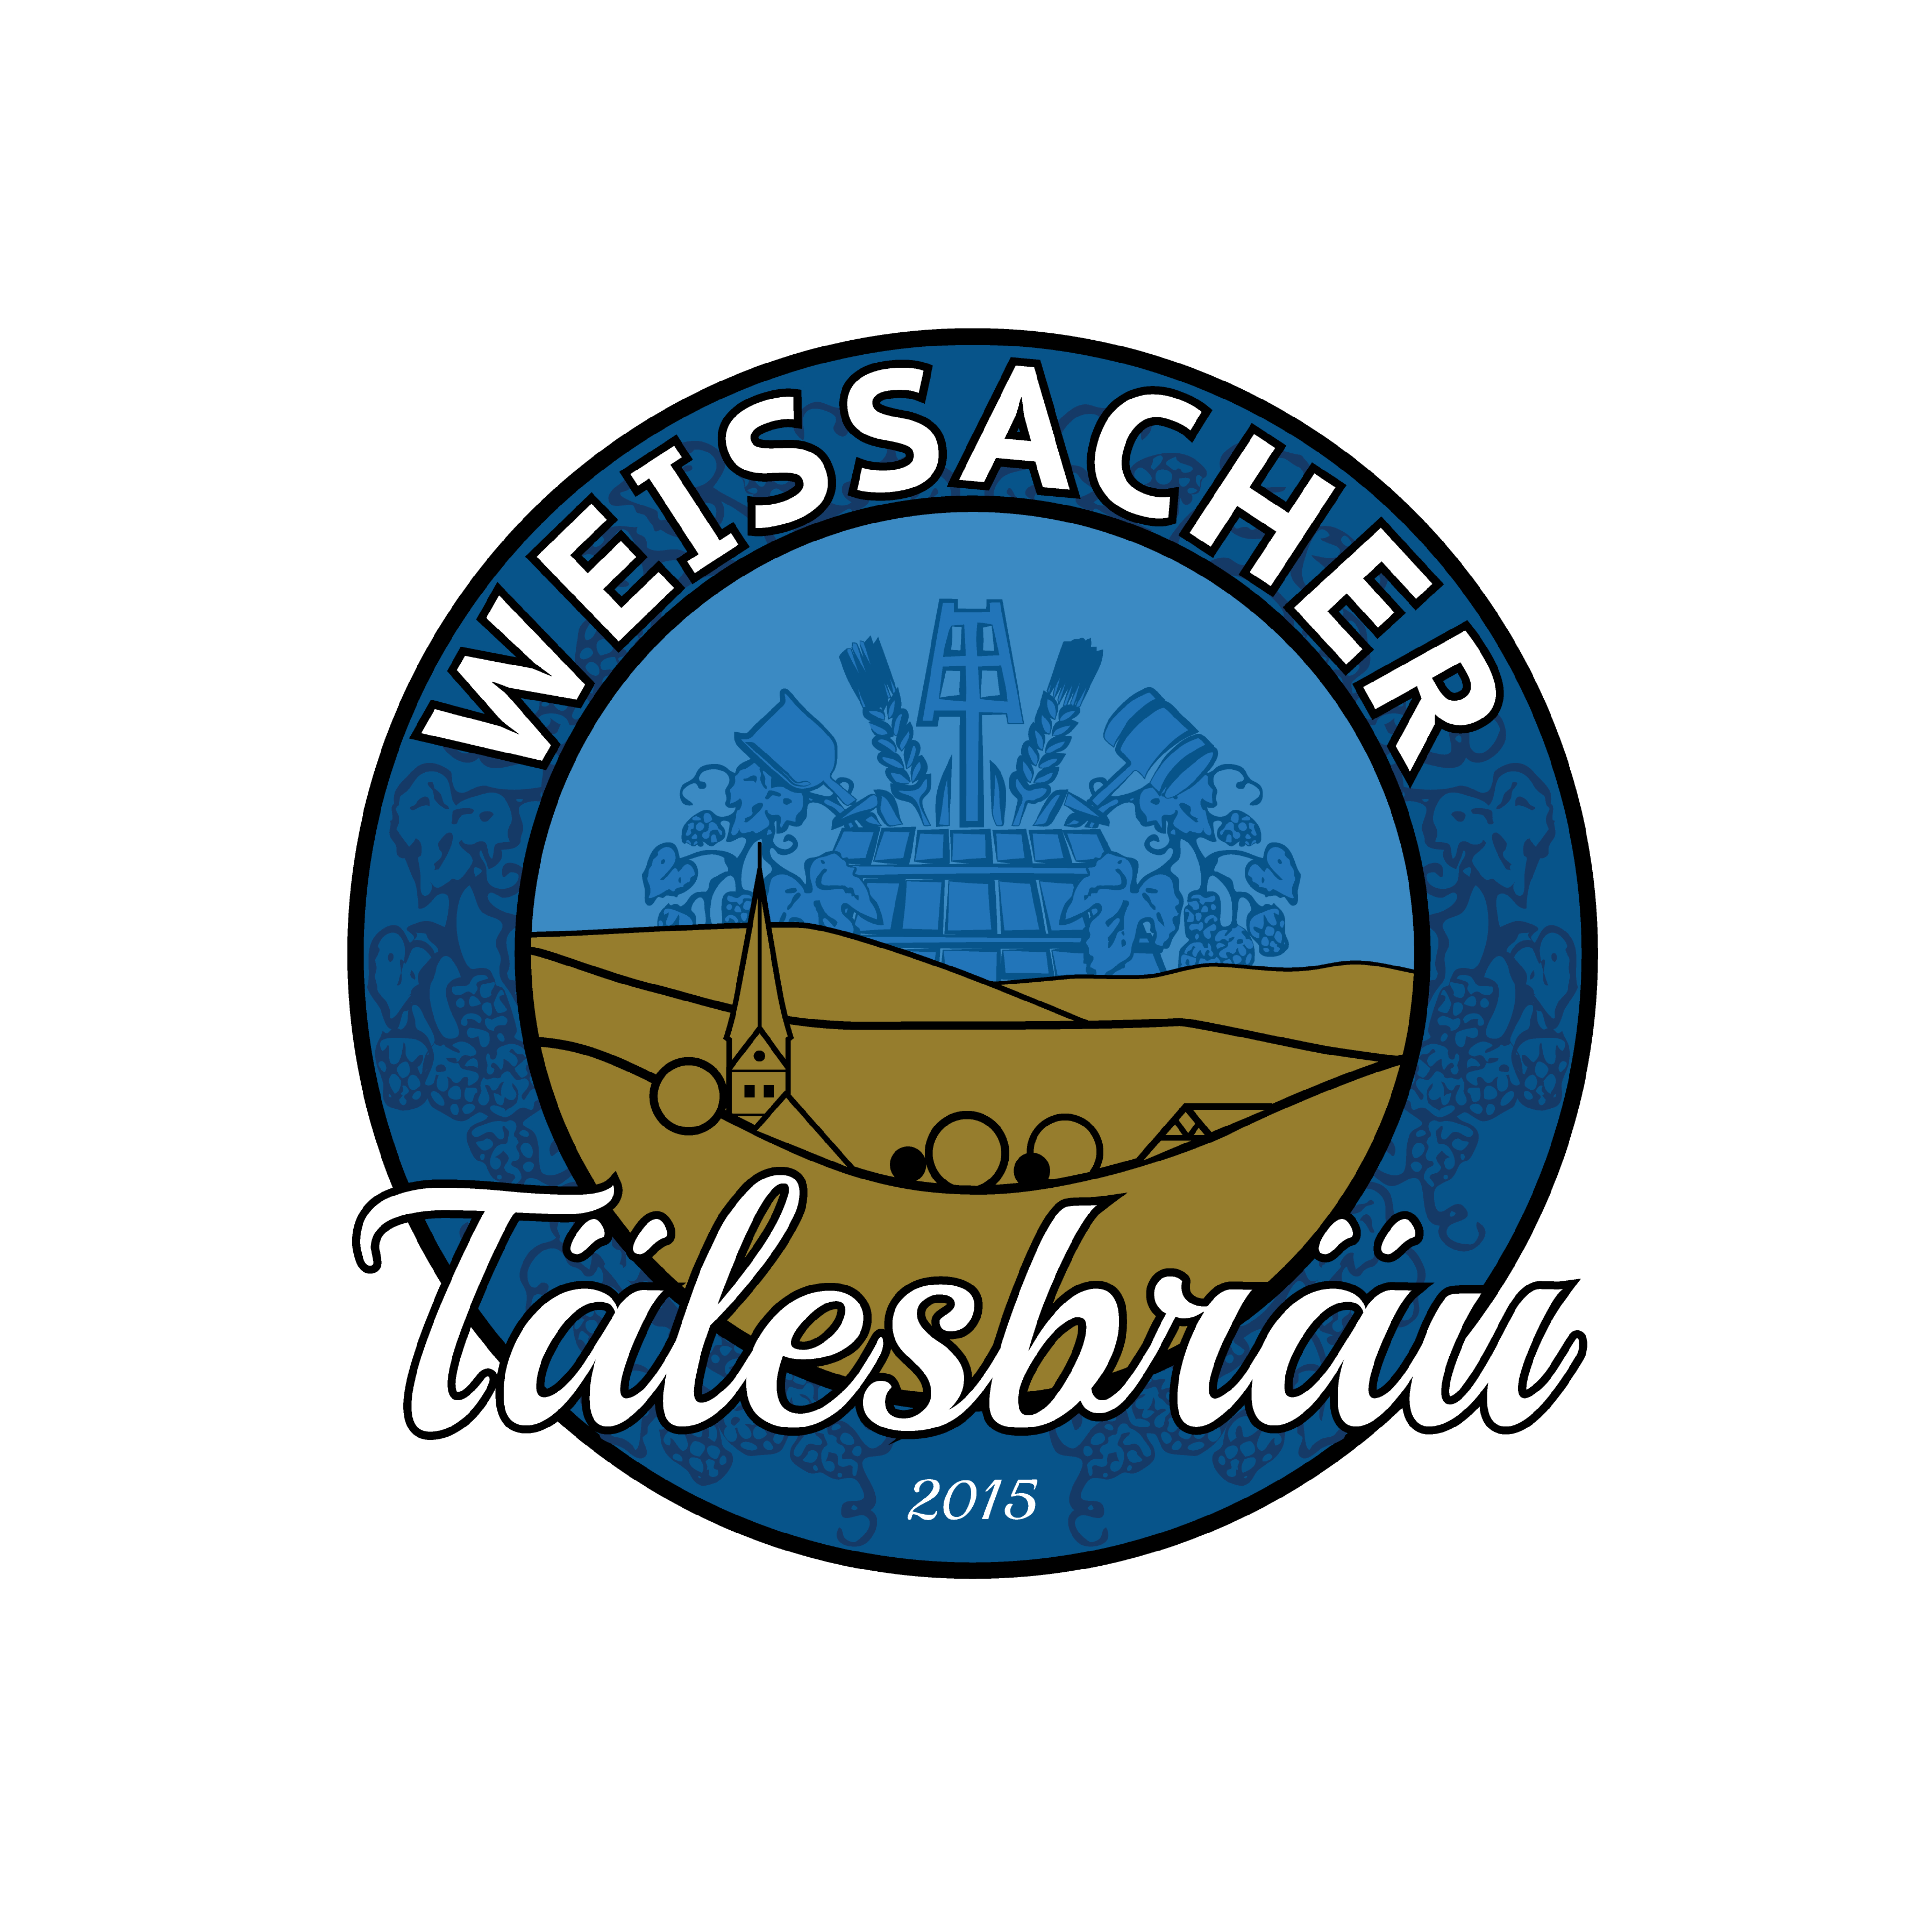 Weissacher Tälesbräu GmbH